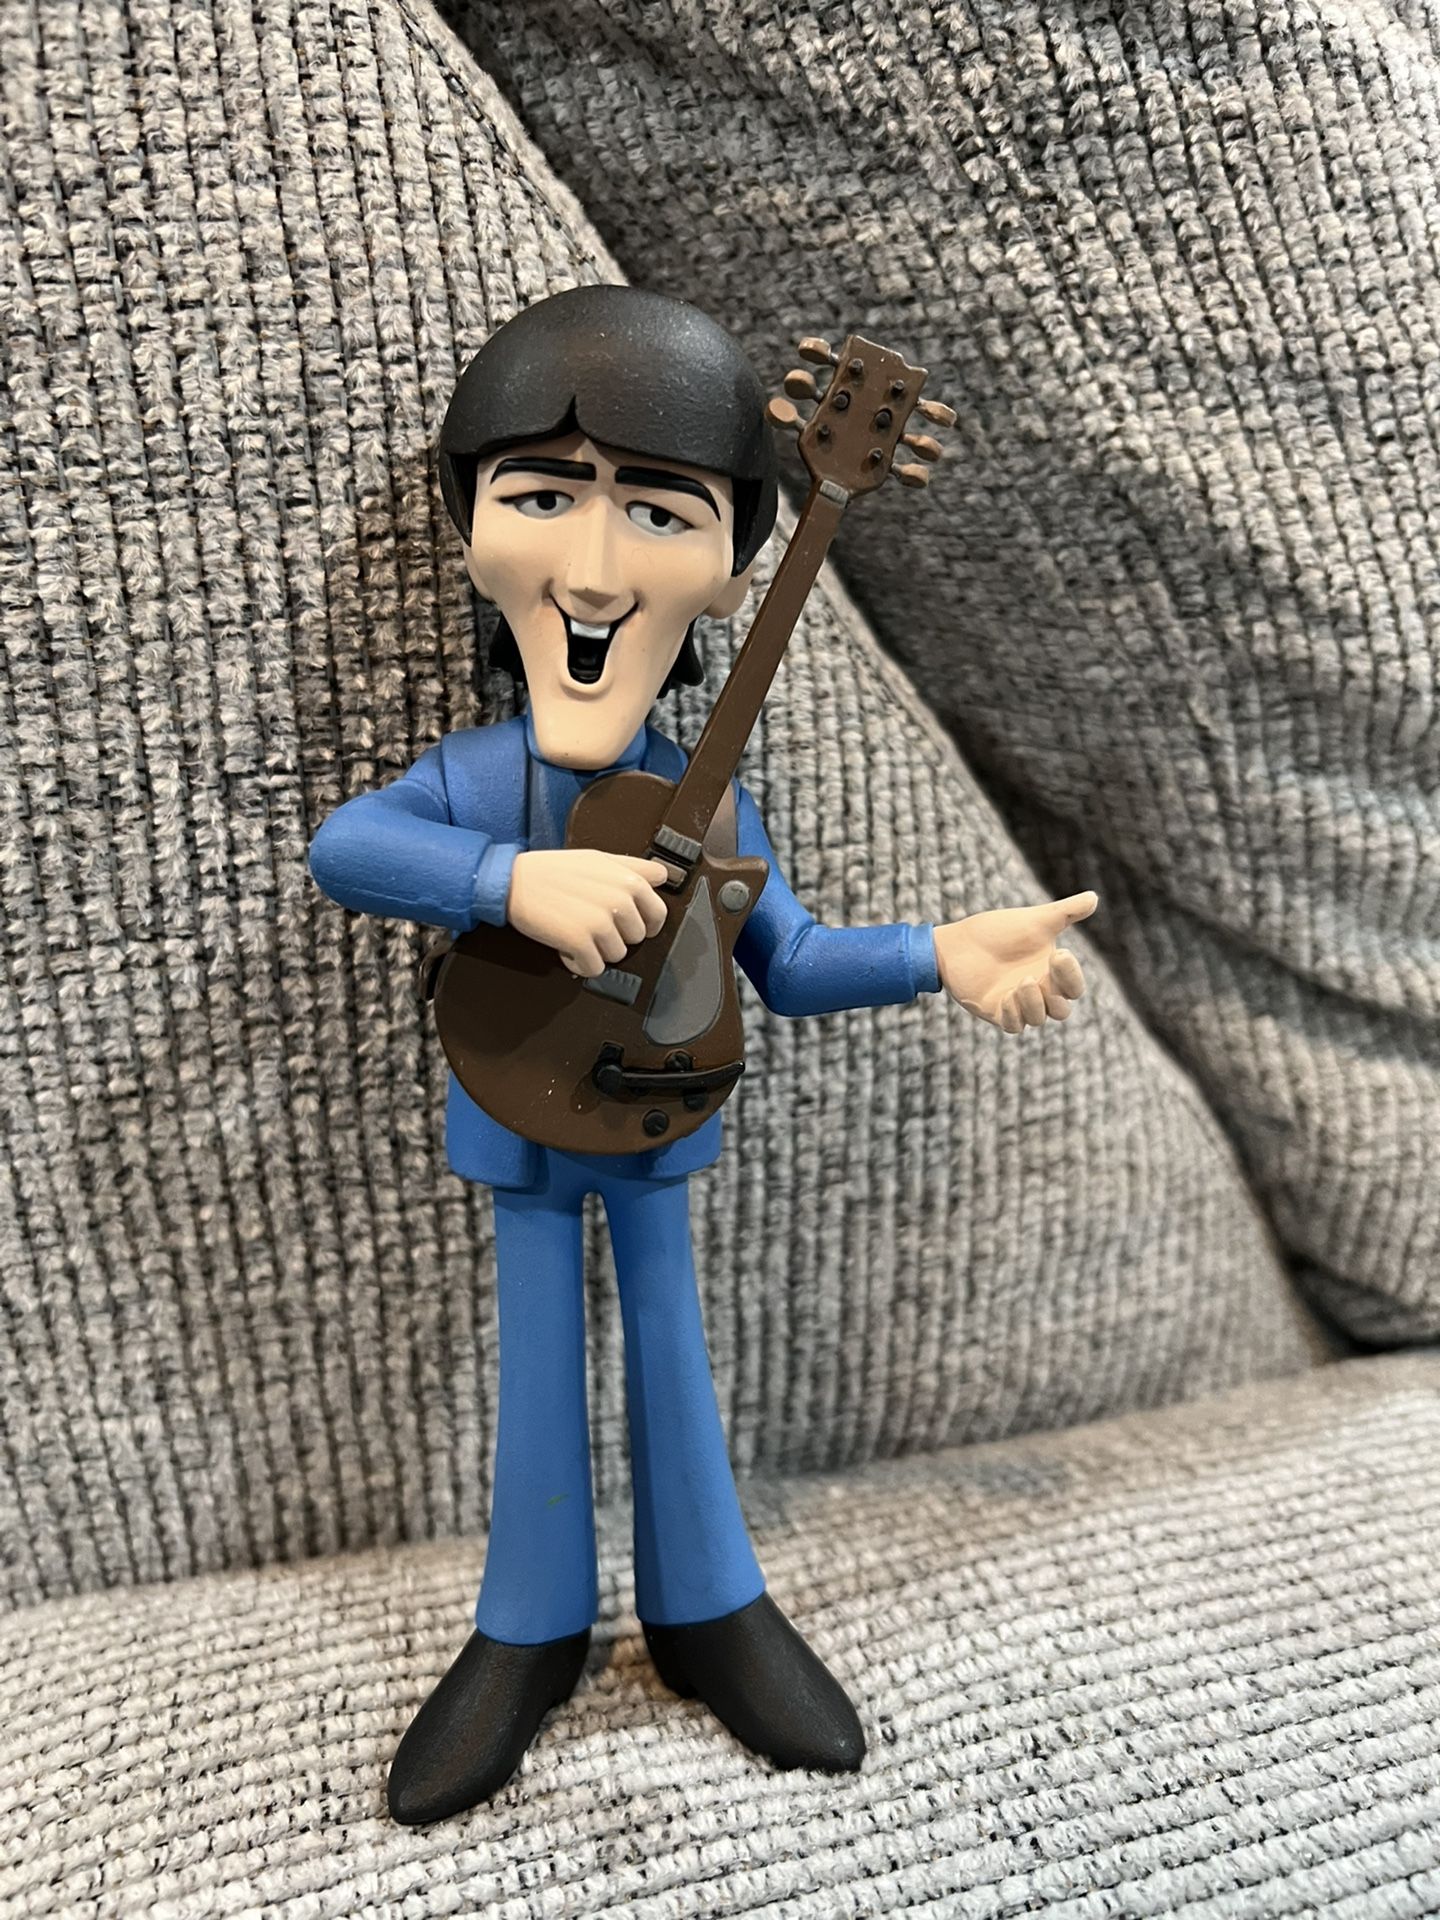 Beatles George Harrison Cartoon Figure 